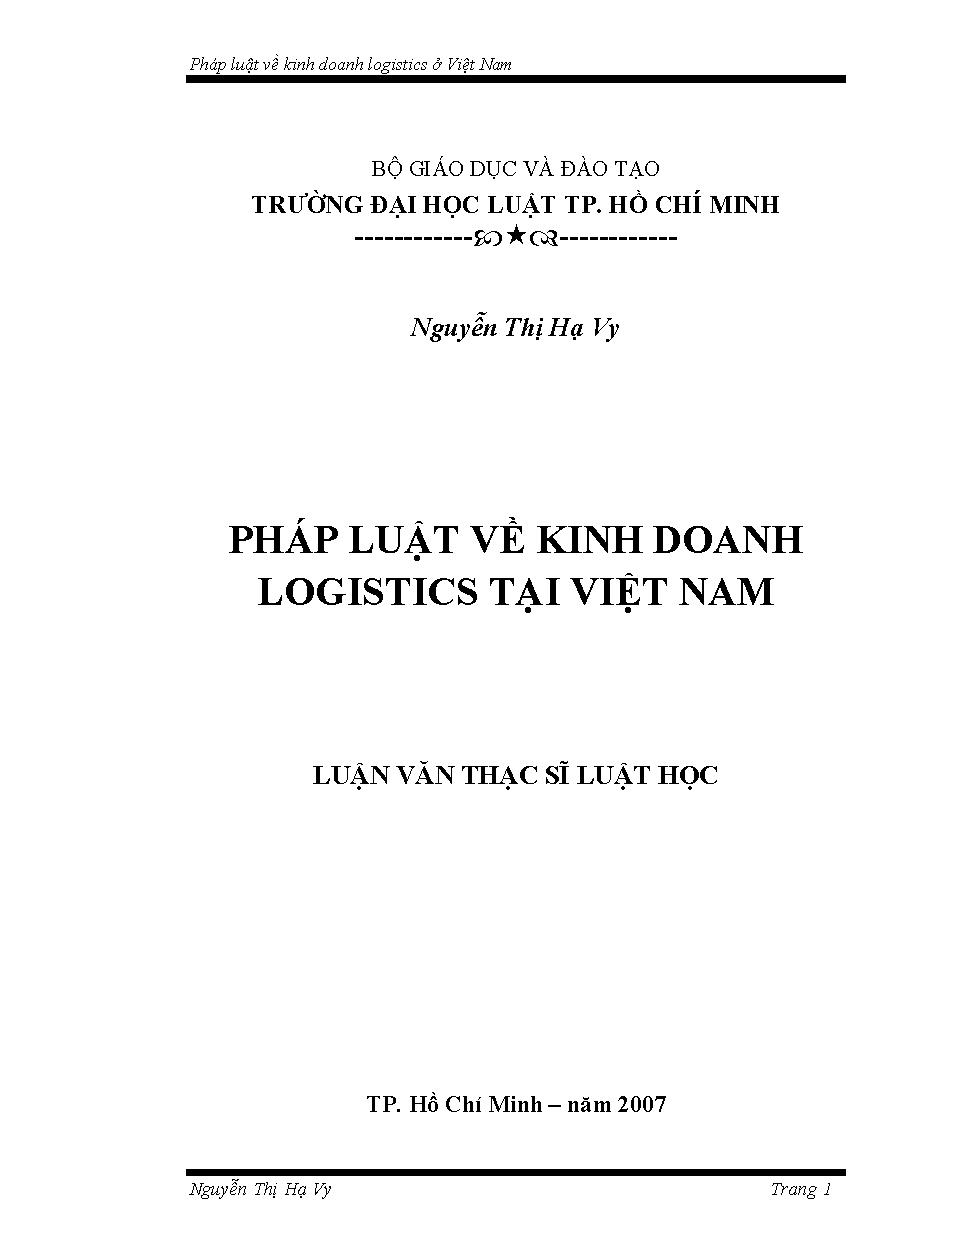 Pháp luật về kinh doanh Logistics tại Việt Nam